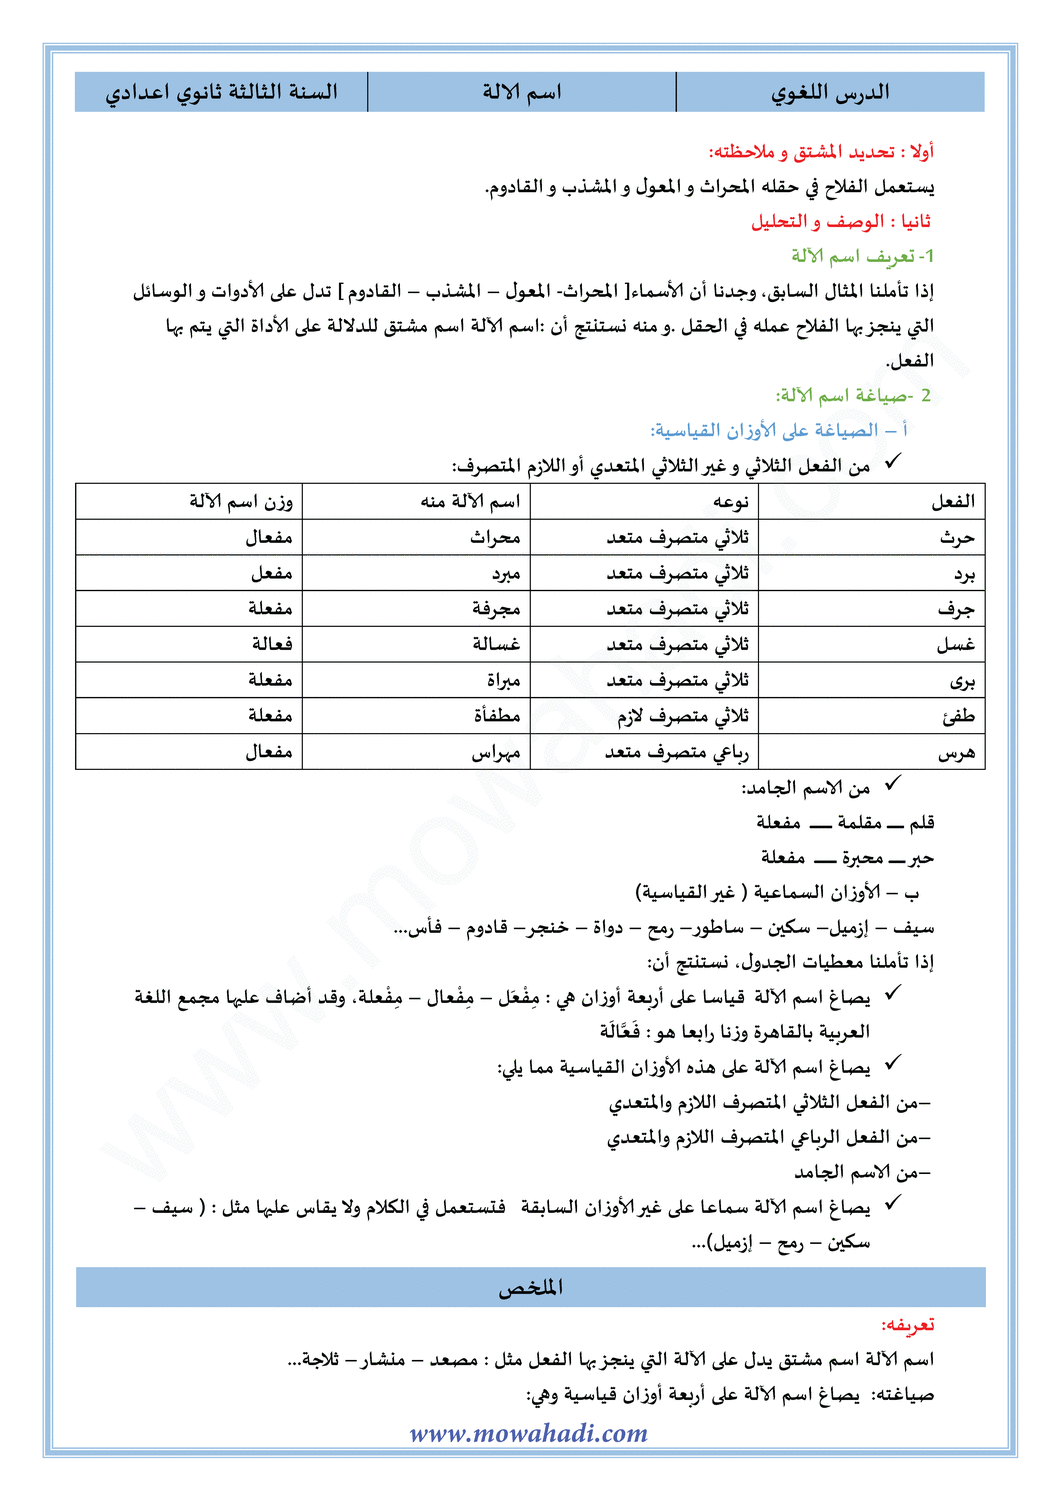 الدرس اللغوي اسم الآلة للسنة الثالثة اعدادي في مادة اللغة العربية